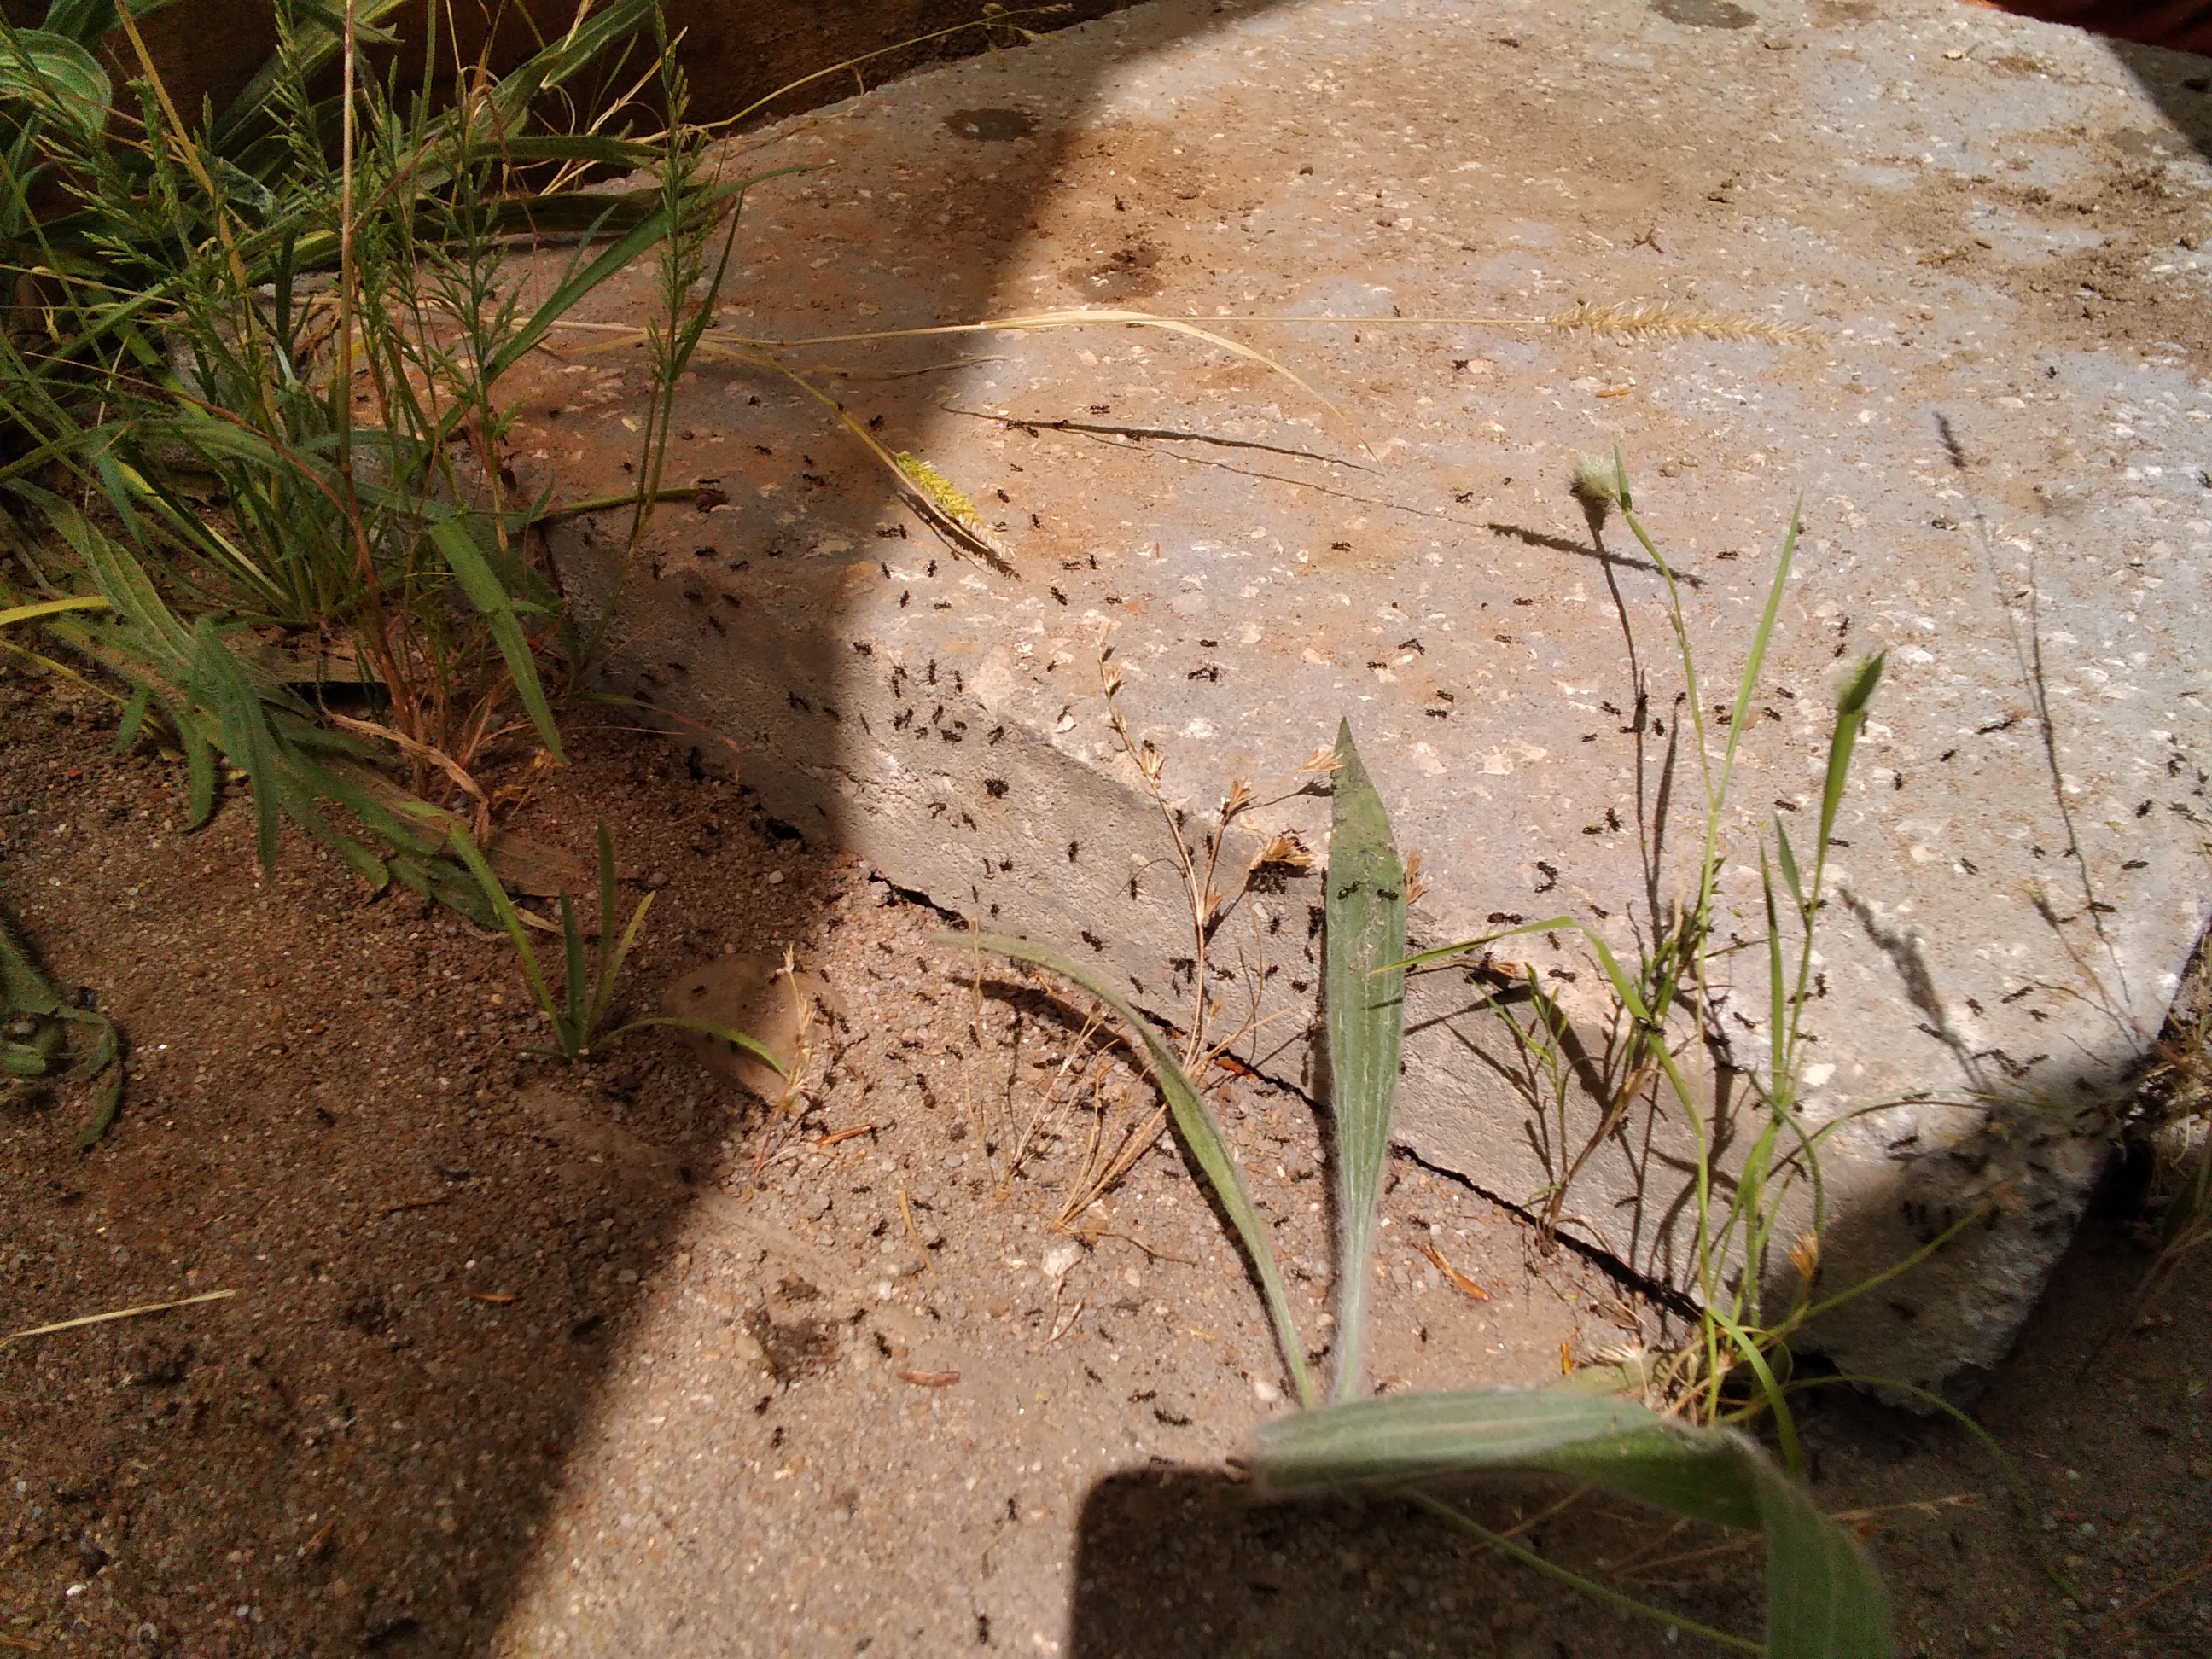 Foto 2 - Observação de espécie invasora (formigas)